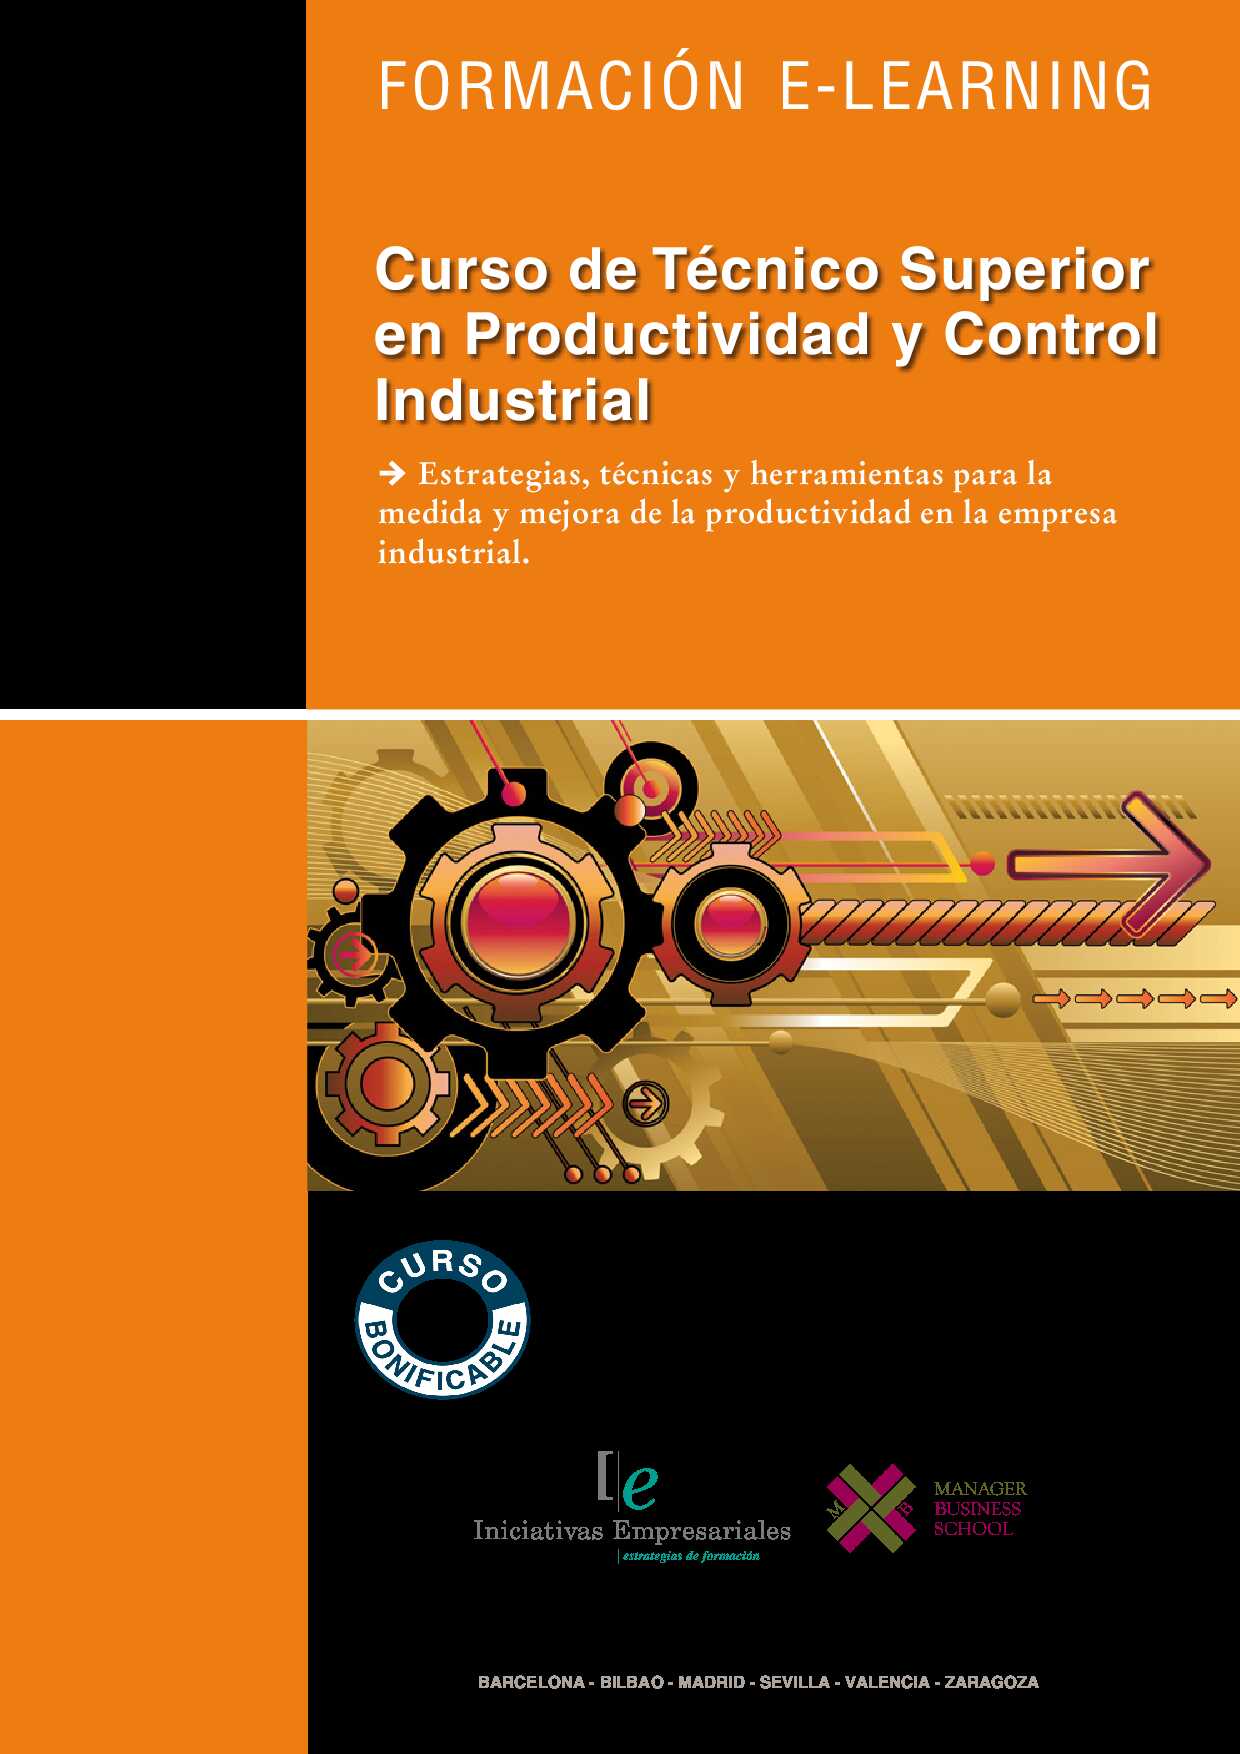 Técnico Superior en Productividad y Control Industrial